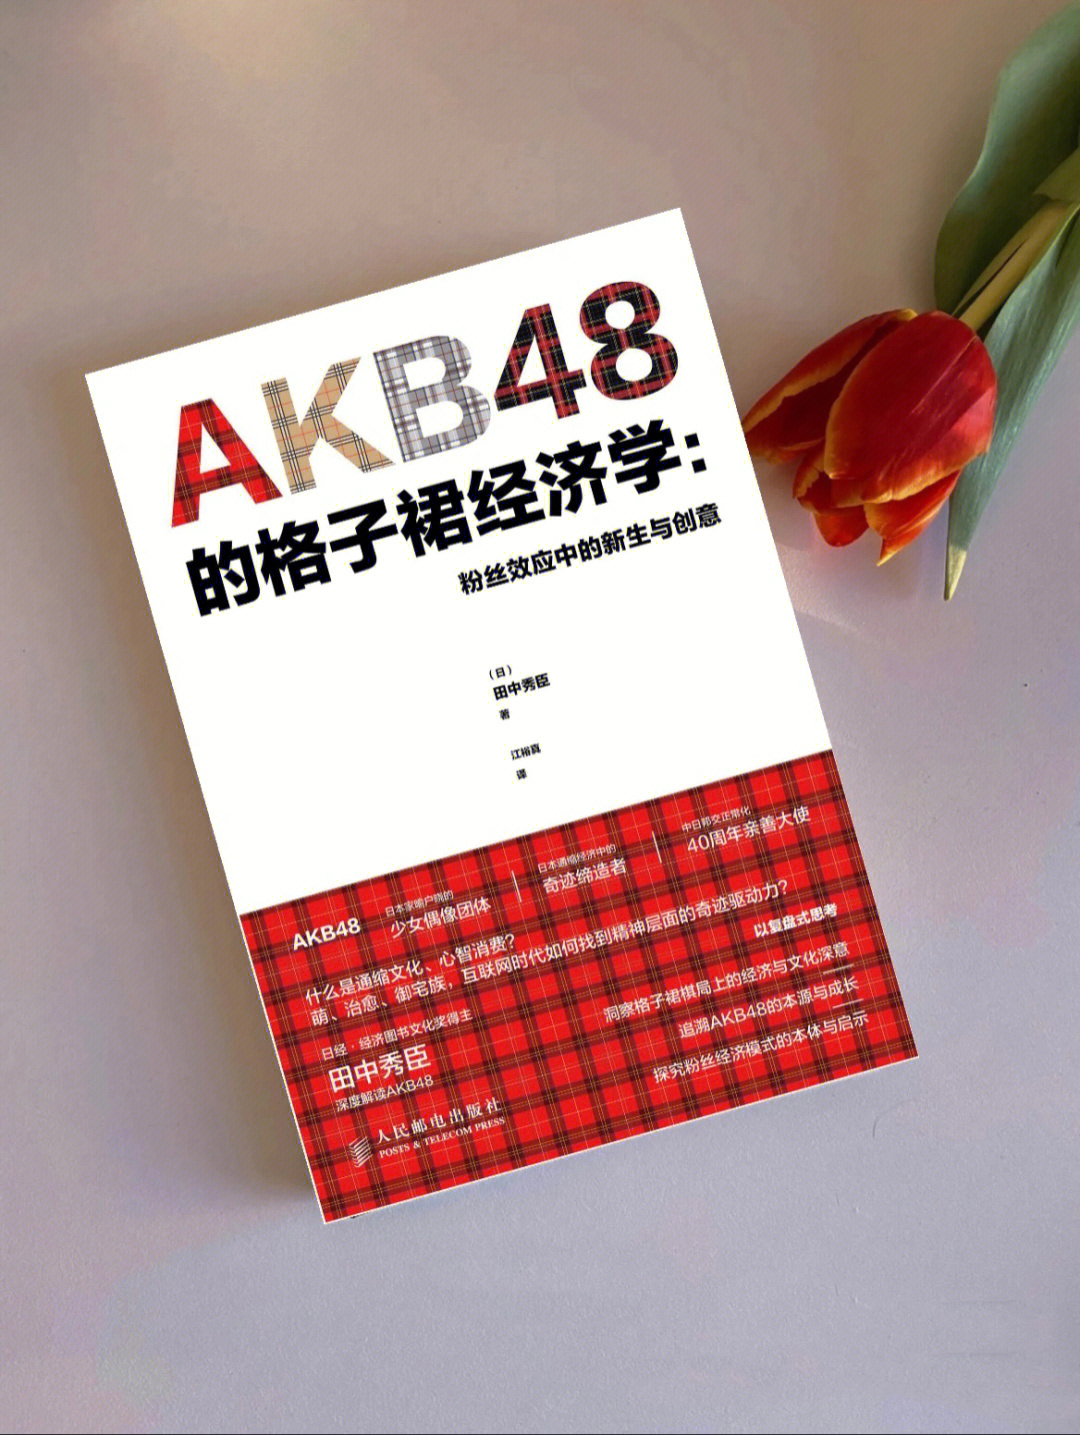 好书分享akb48的格子裙经济学粉丝